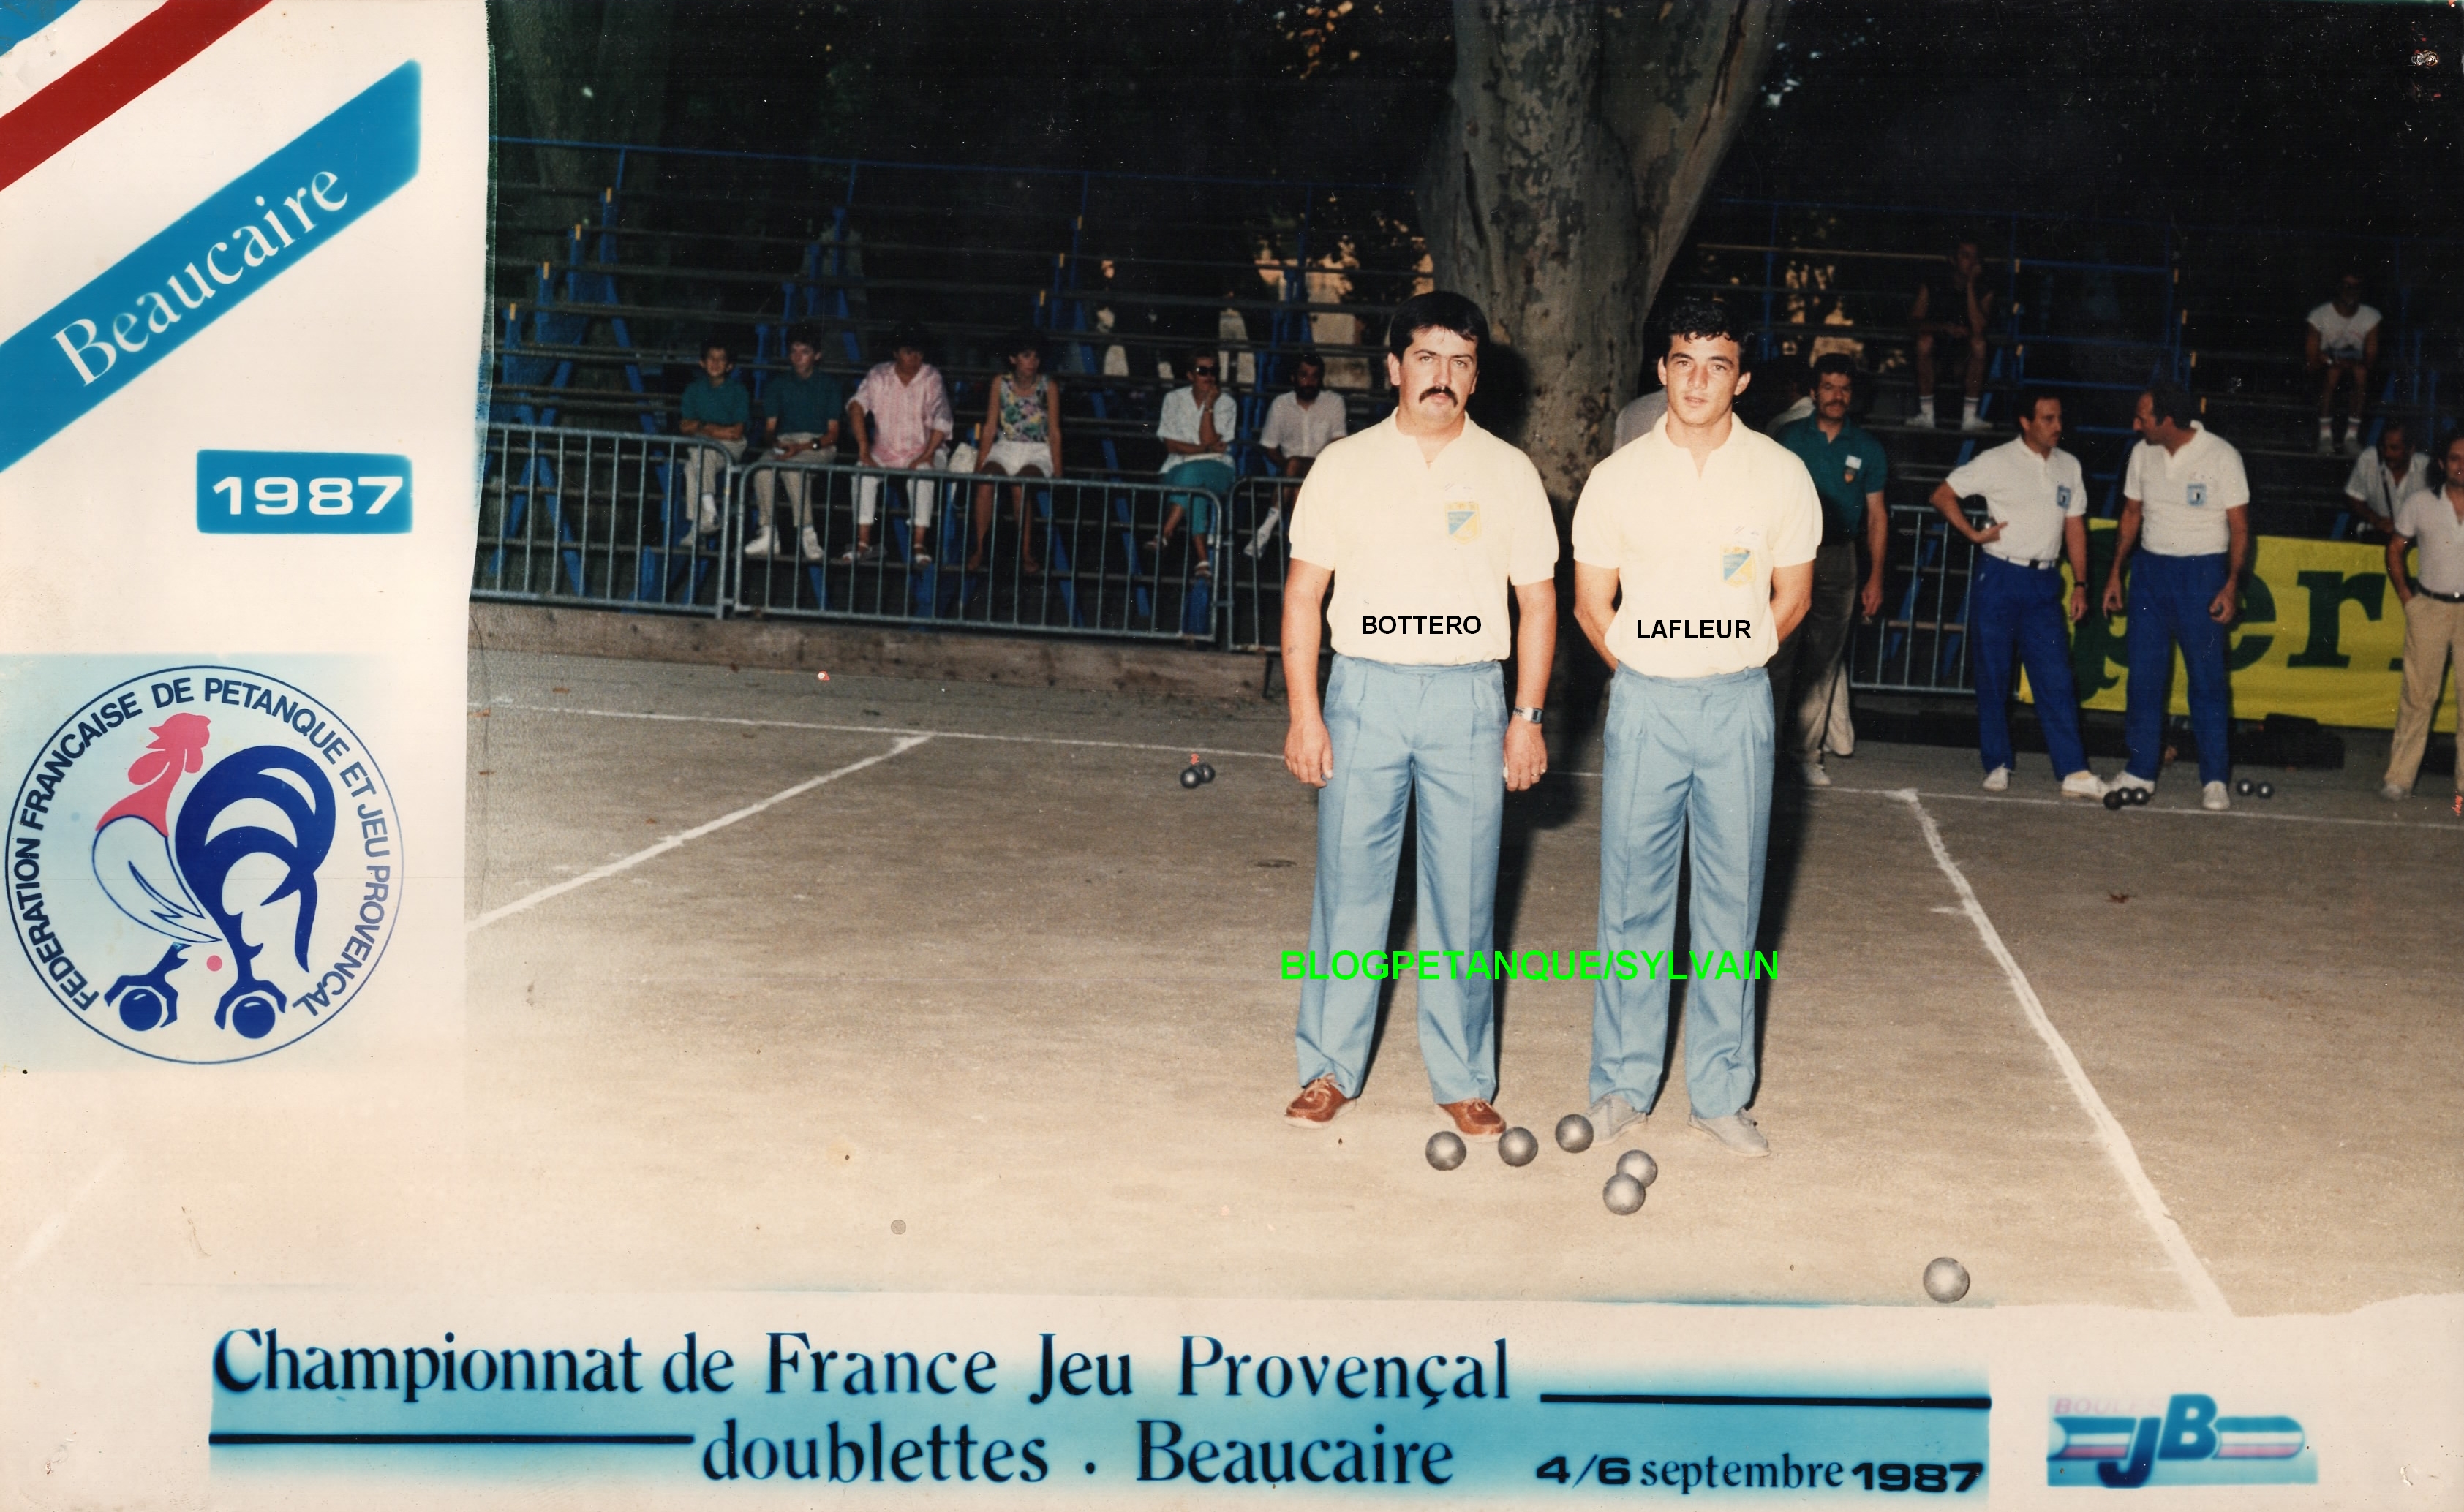 Tous les joueurs qualifiés au Championnat de France doublettes au Jeu Provençal de 1977 à 2023